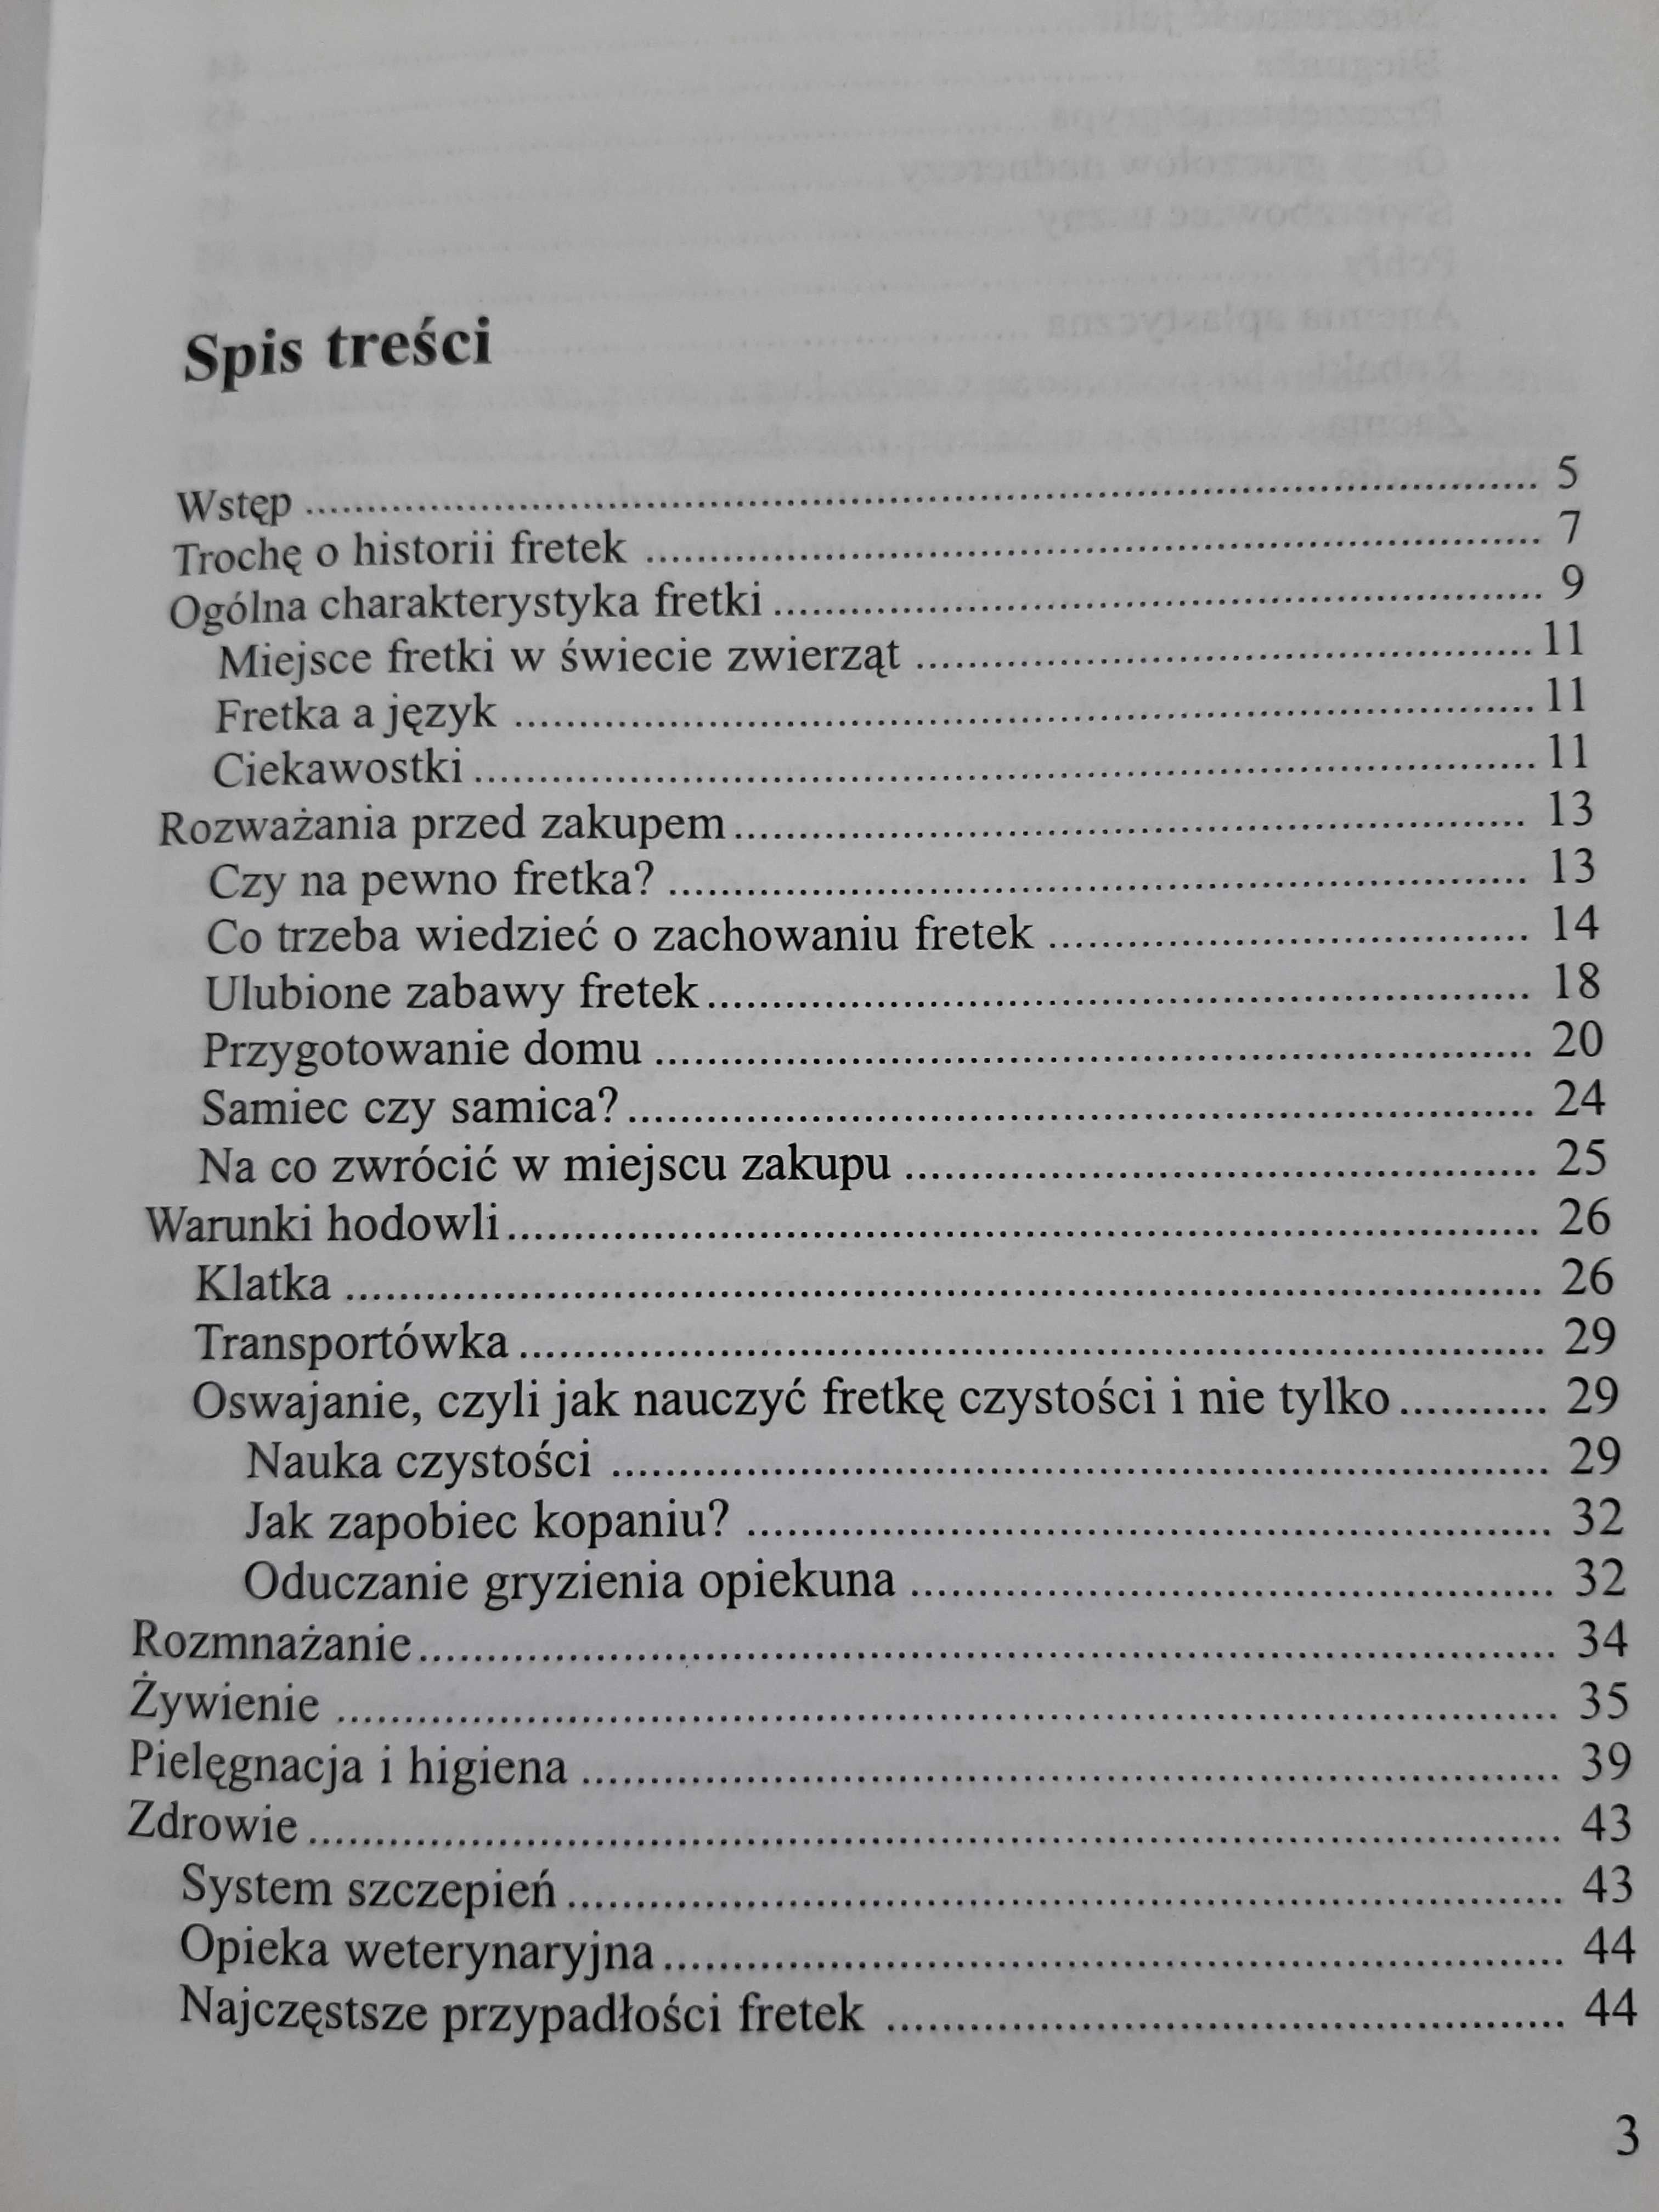 Książka fretki. Agnieszka Zas